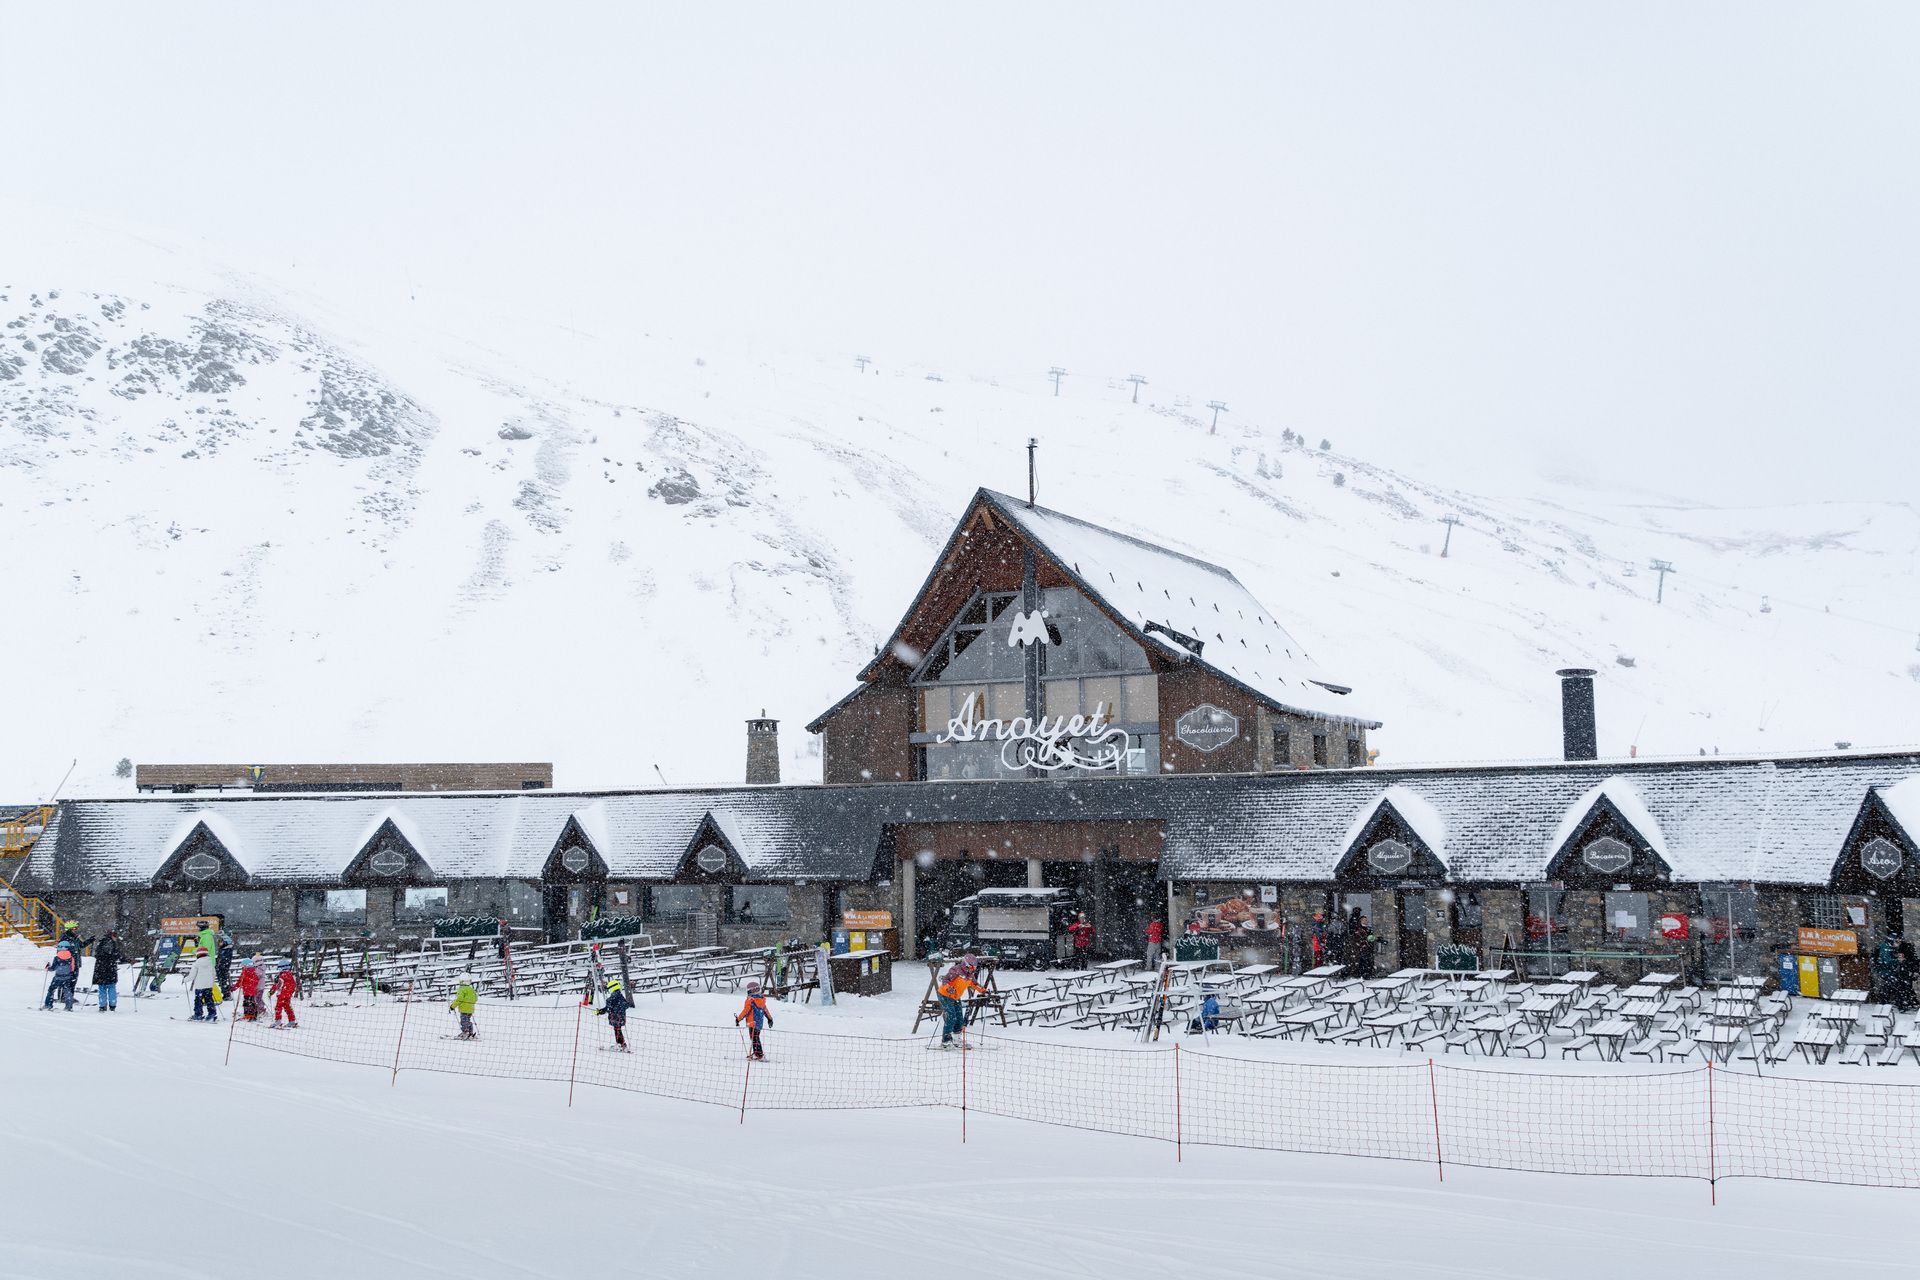 Las estaciones de Aramón amplian kilómetros esquiables este fin de semana